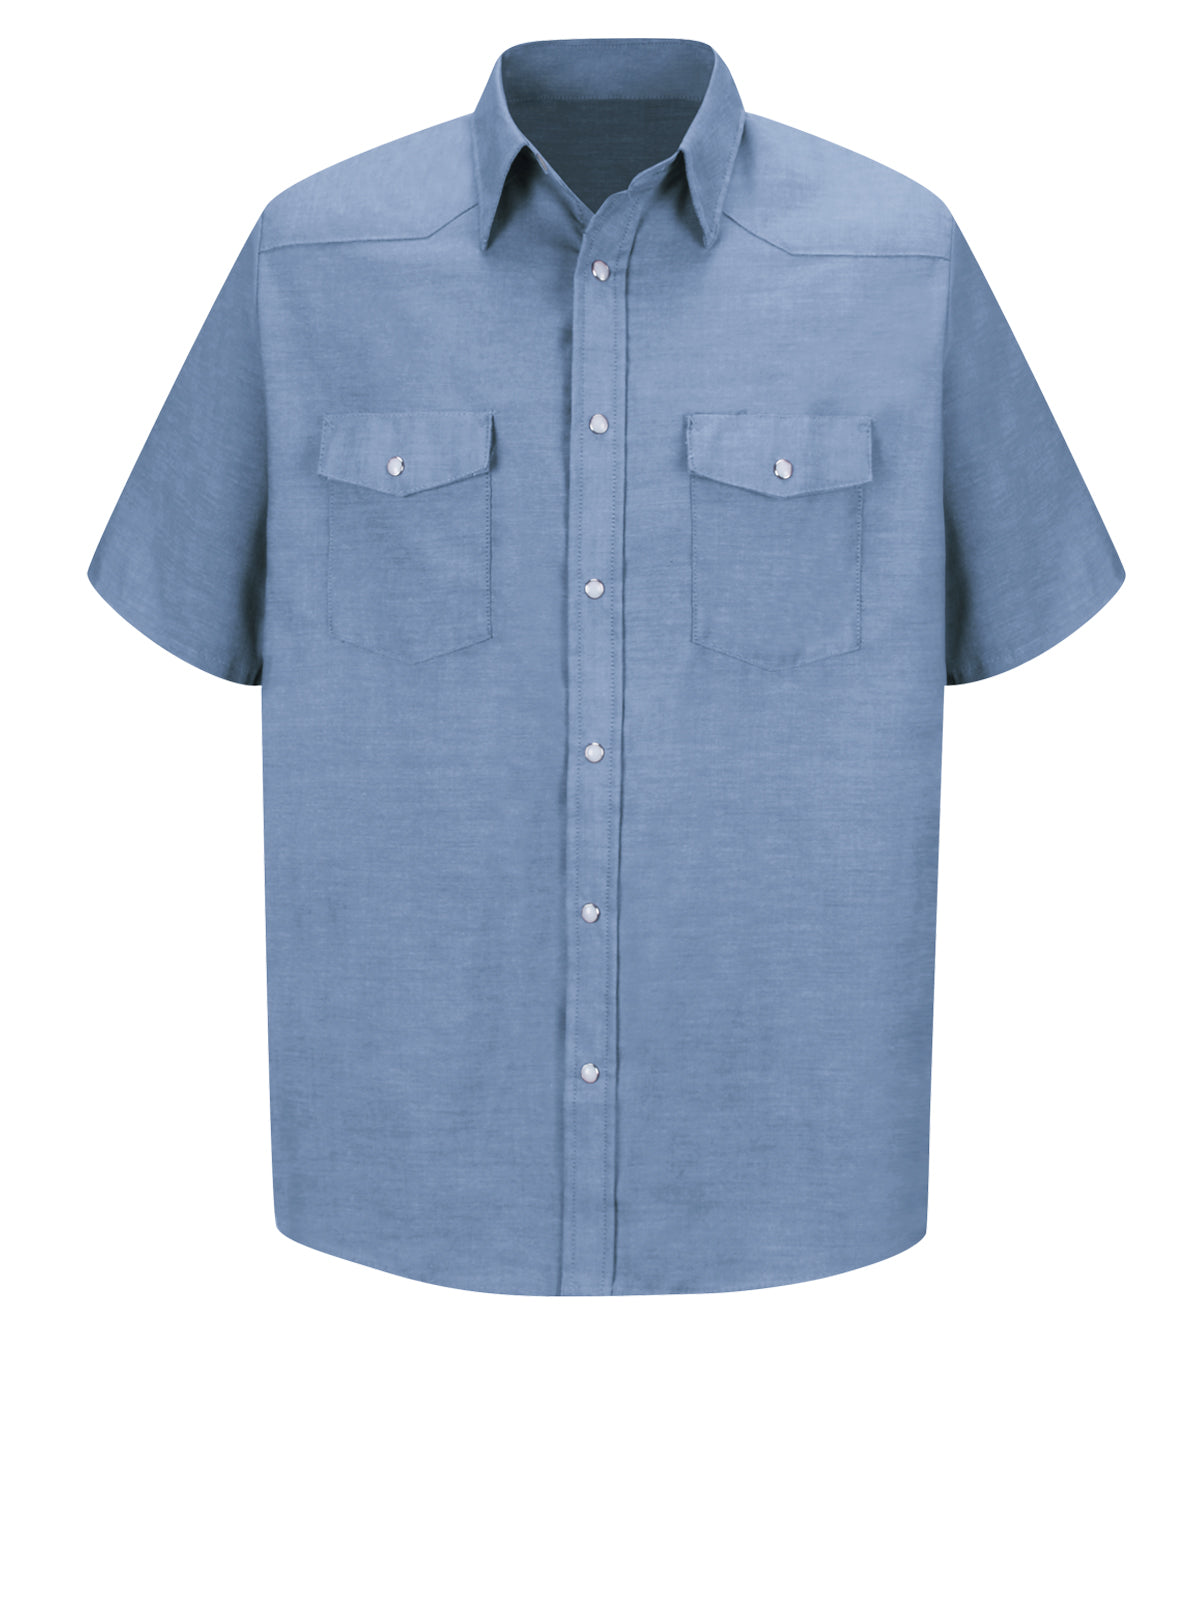 Men's Short Sleeve Deluxe Western Style Shirt - SC24 - Light Blue